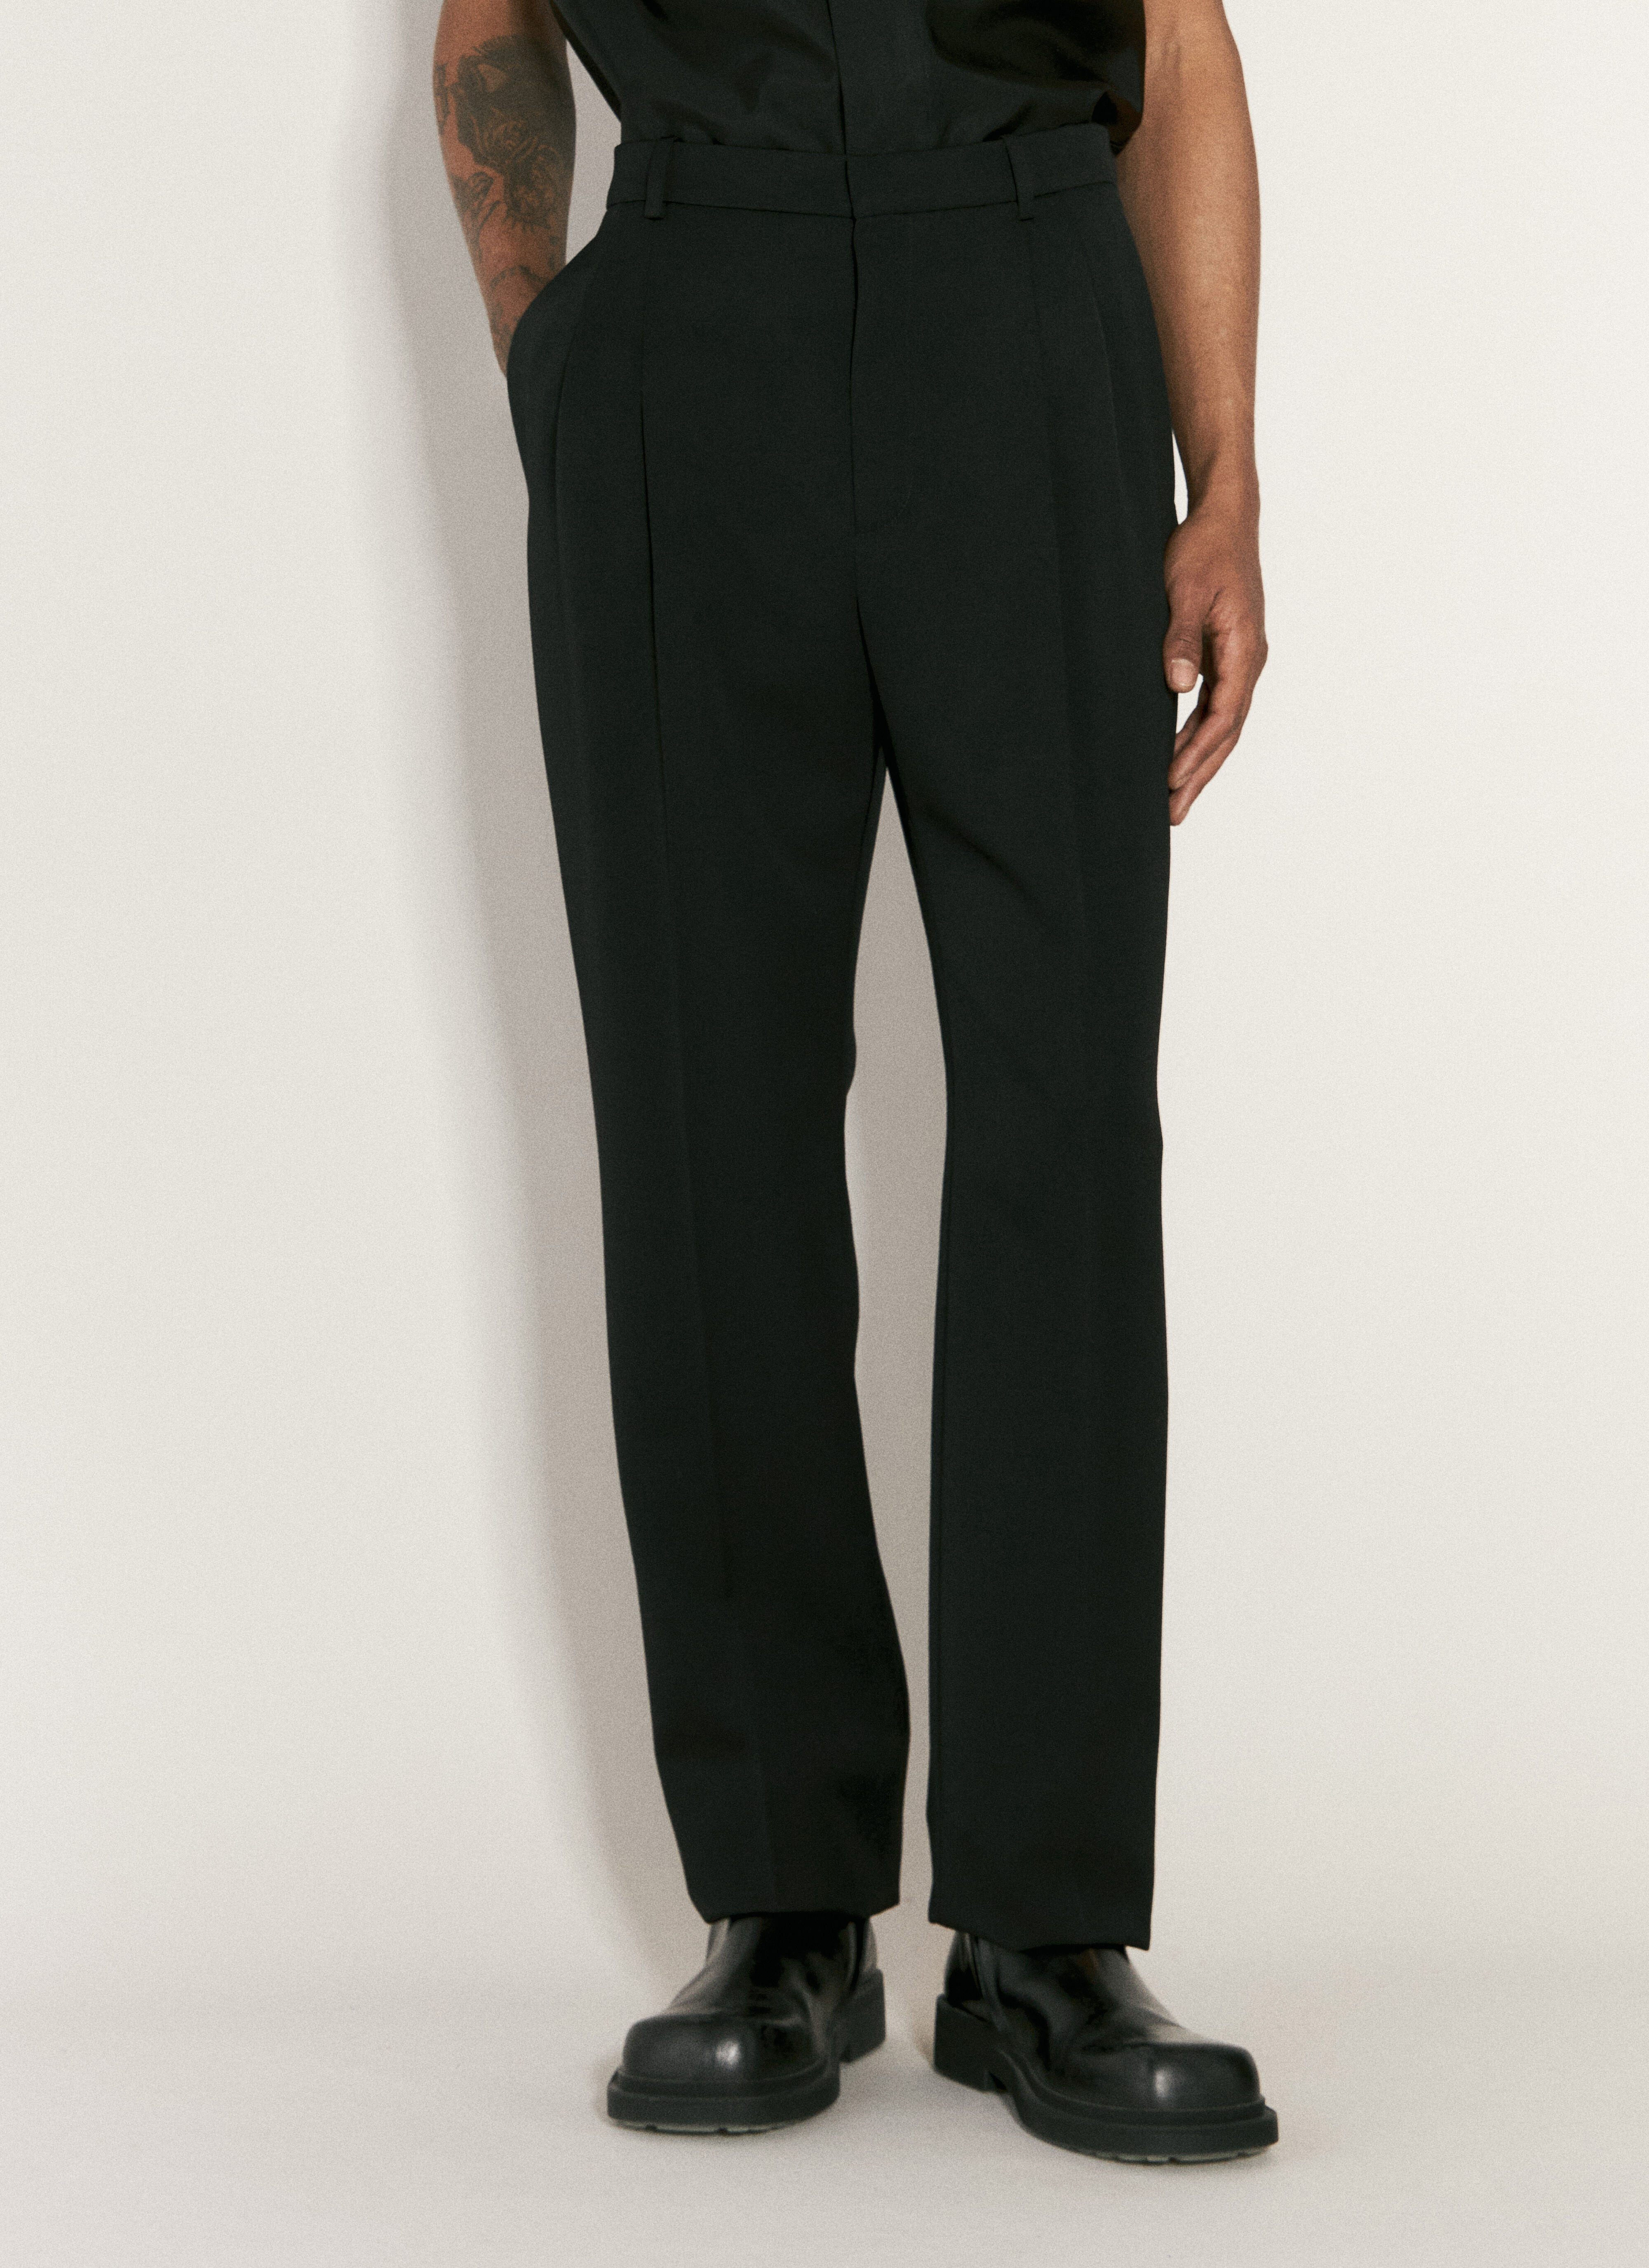 Saint Laurent High-Waisted Tailored Pants Black sla0156019